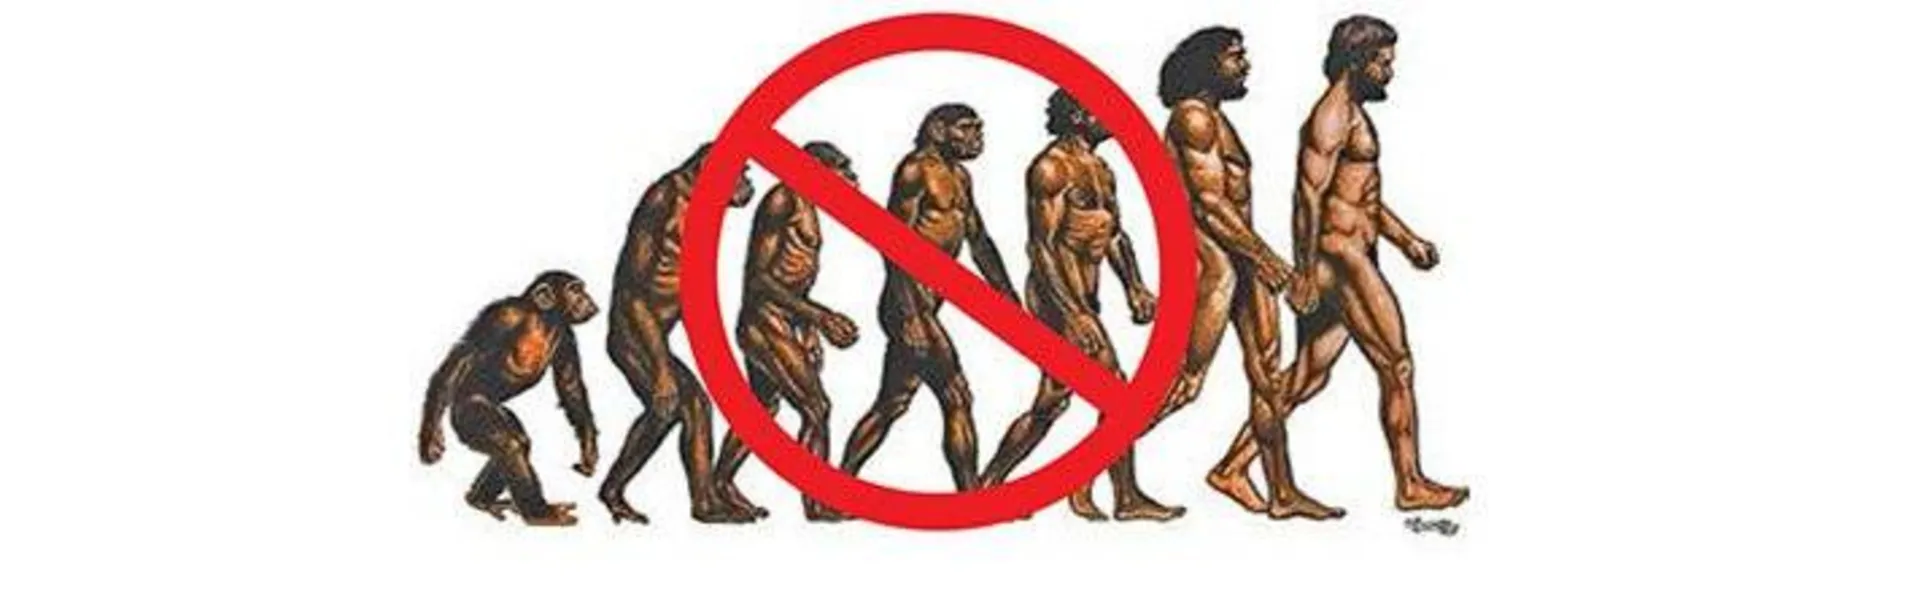 تصویر اشتباه از تکامل